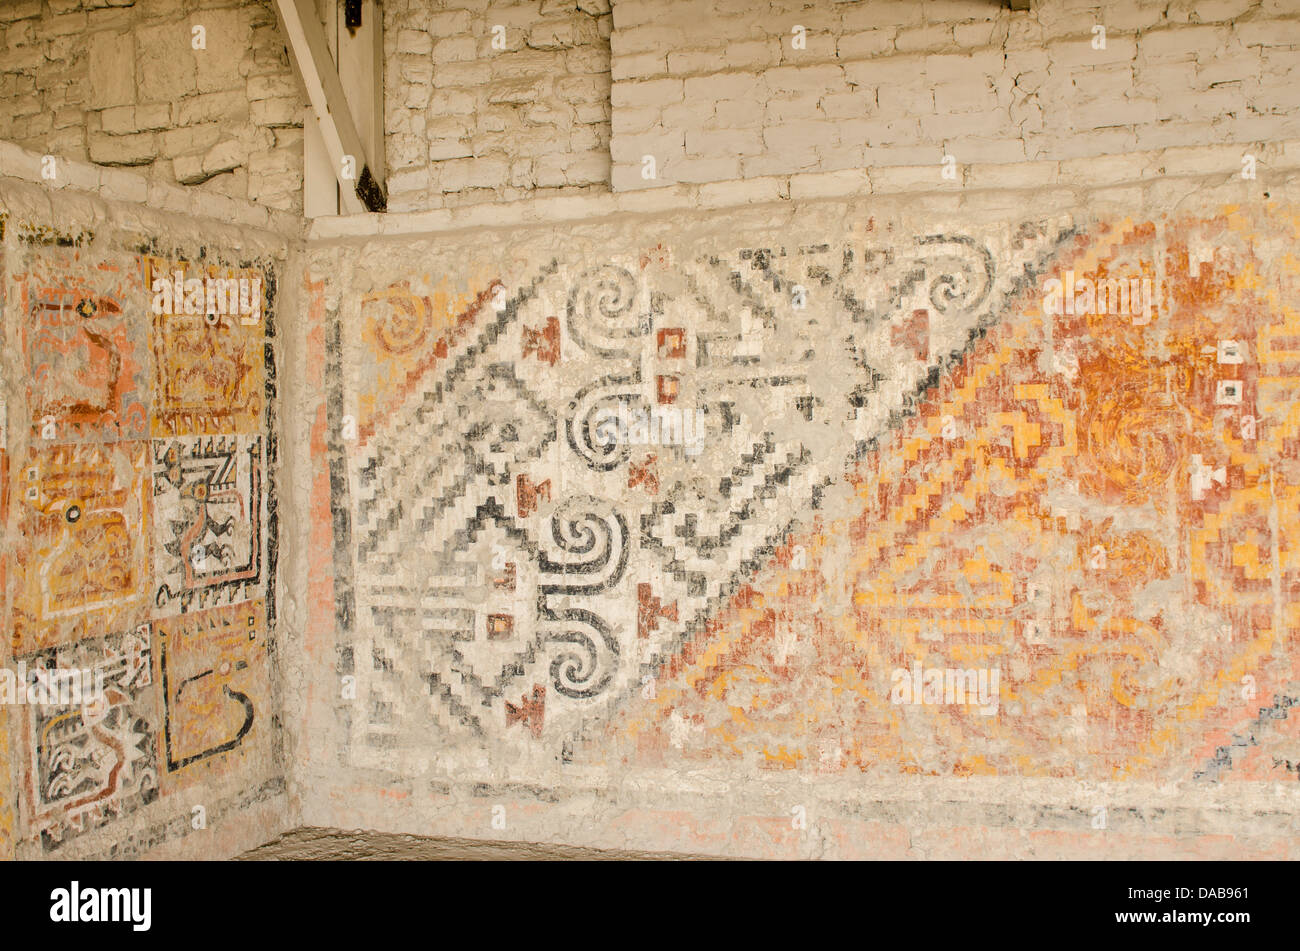 Antica pre colombiana petrogylphs rilievi dipinti murali a El Brujo complesso archeologico rovine rimane vicino a Trujillo, Perú. Foto Stock